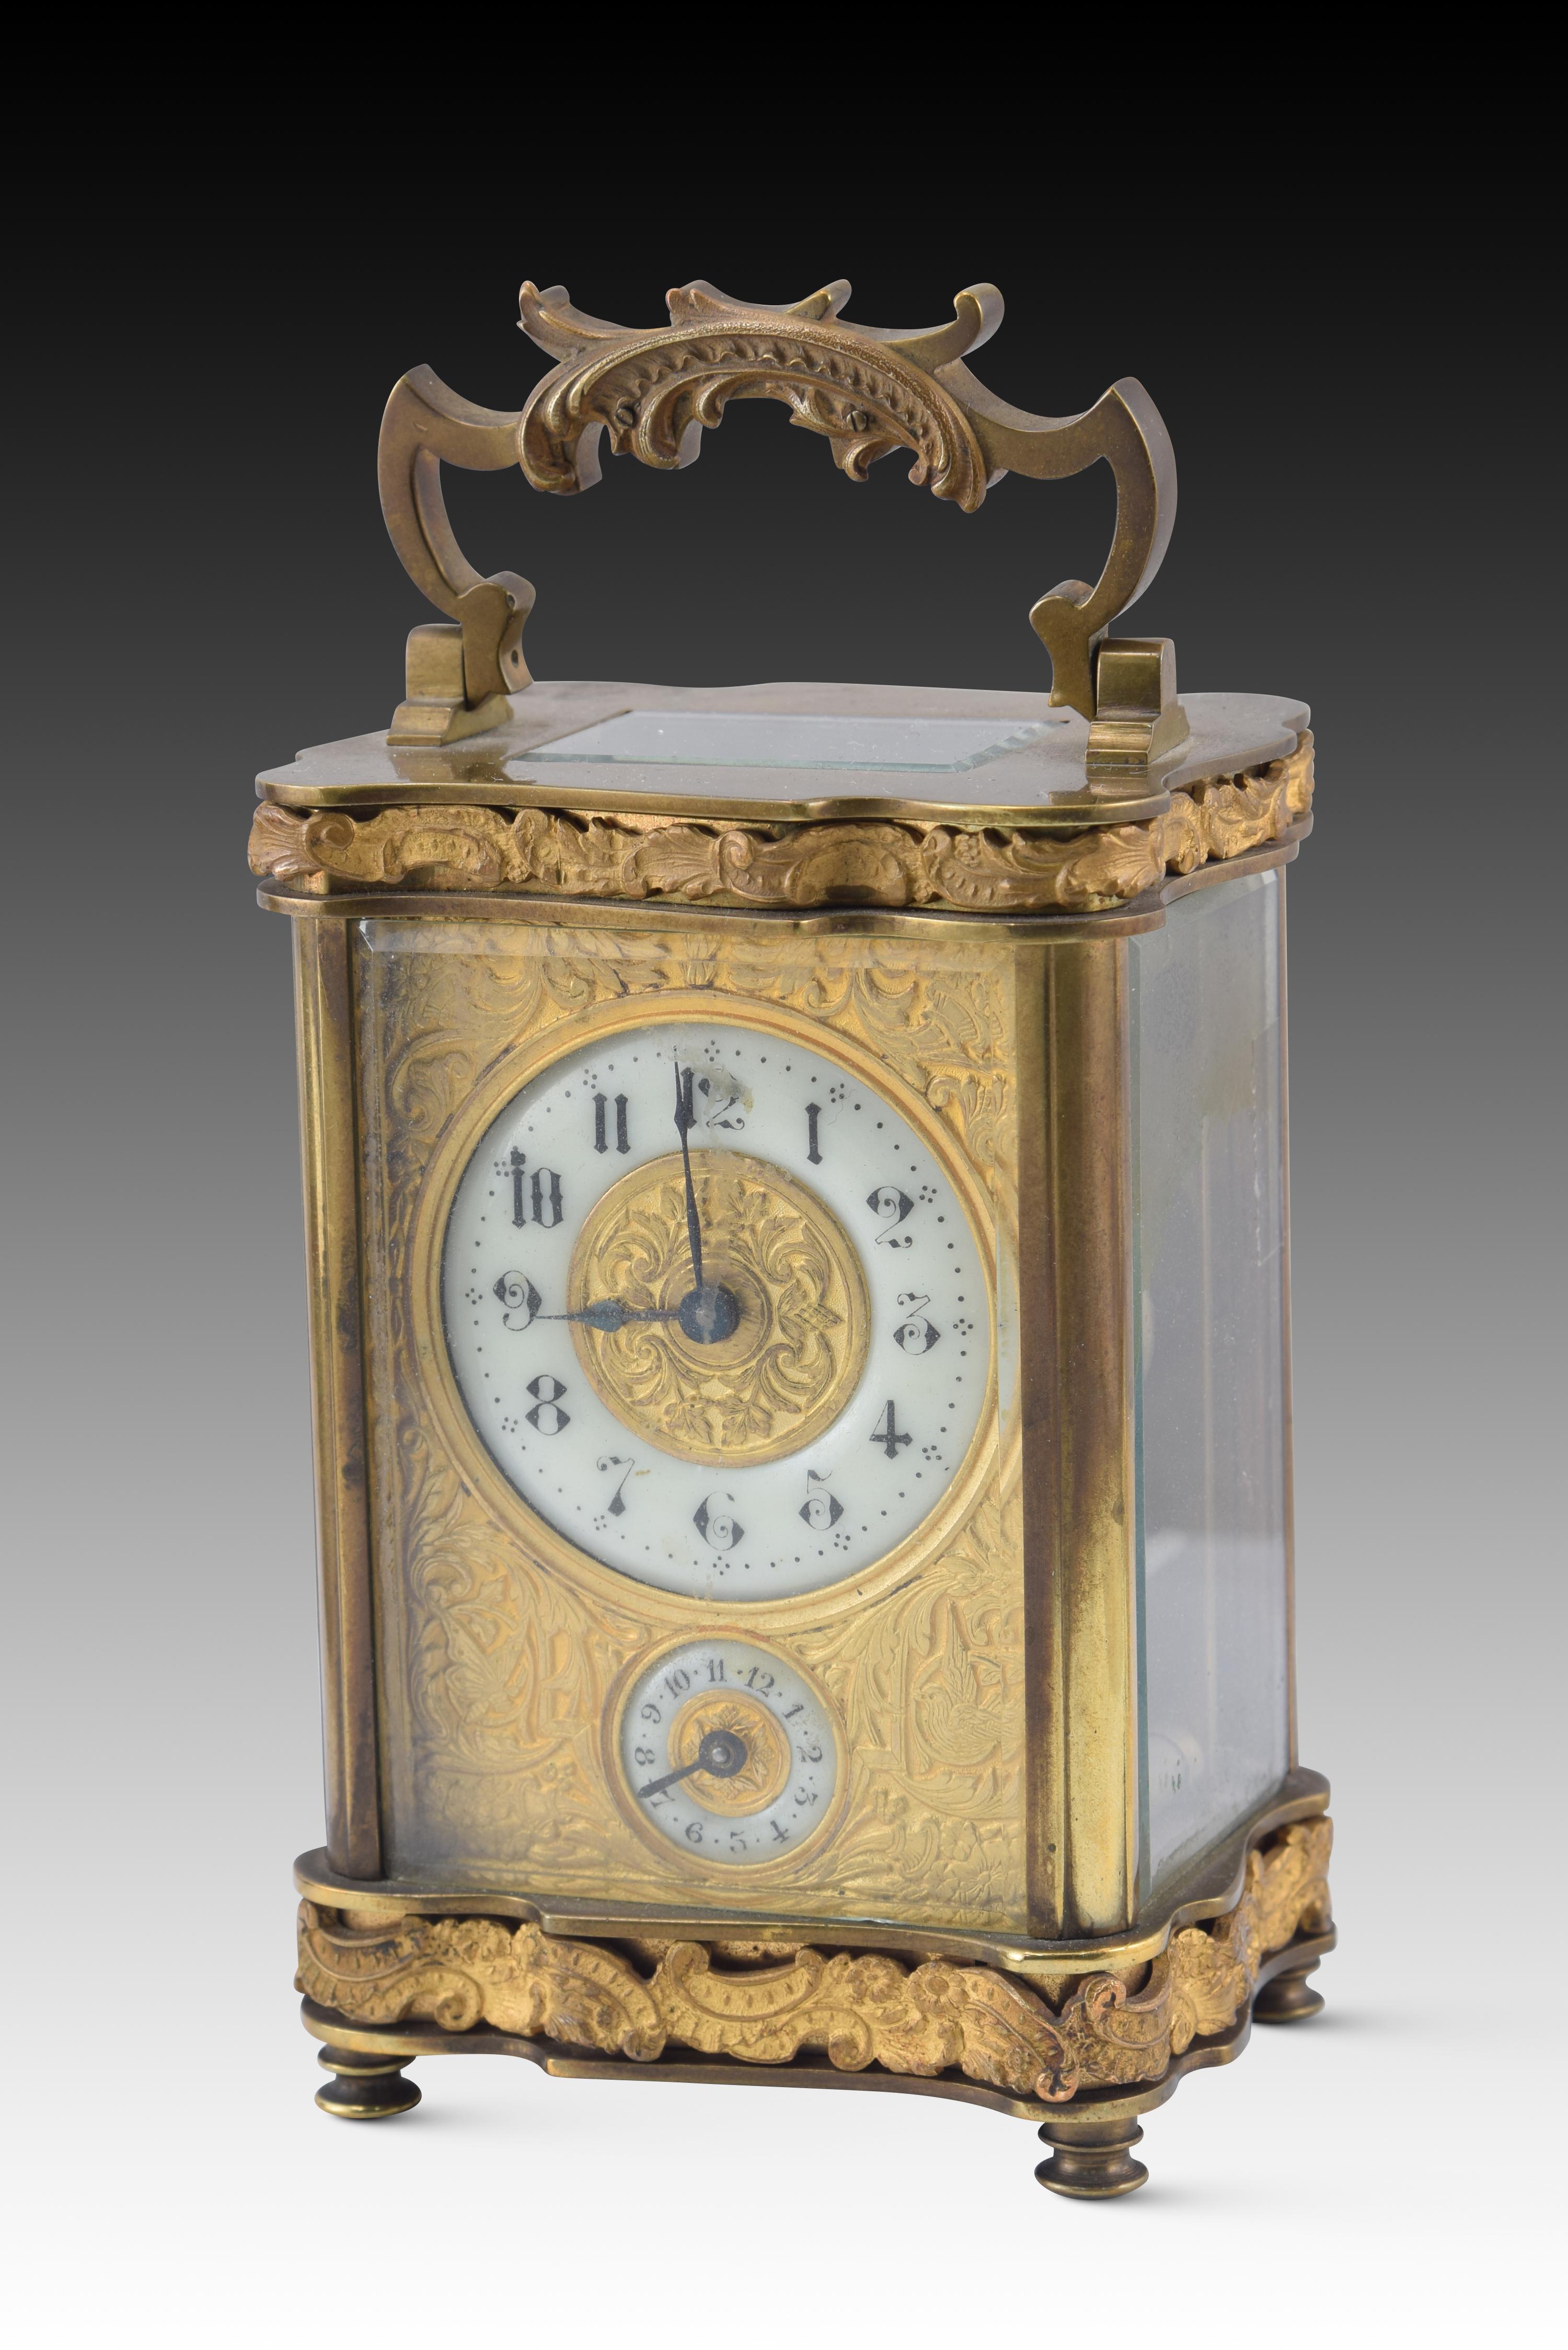 Horloge de voyage avec étui. Métal, verre, cuir, etc. XIXe siècle. 
Boîtier avec couvercle en haut et devant avec une feuille de verre transparent, rembourré à l'intérieur, contenant un pendulette de voyage avec fonction d'alarme. Il est doté d'une